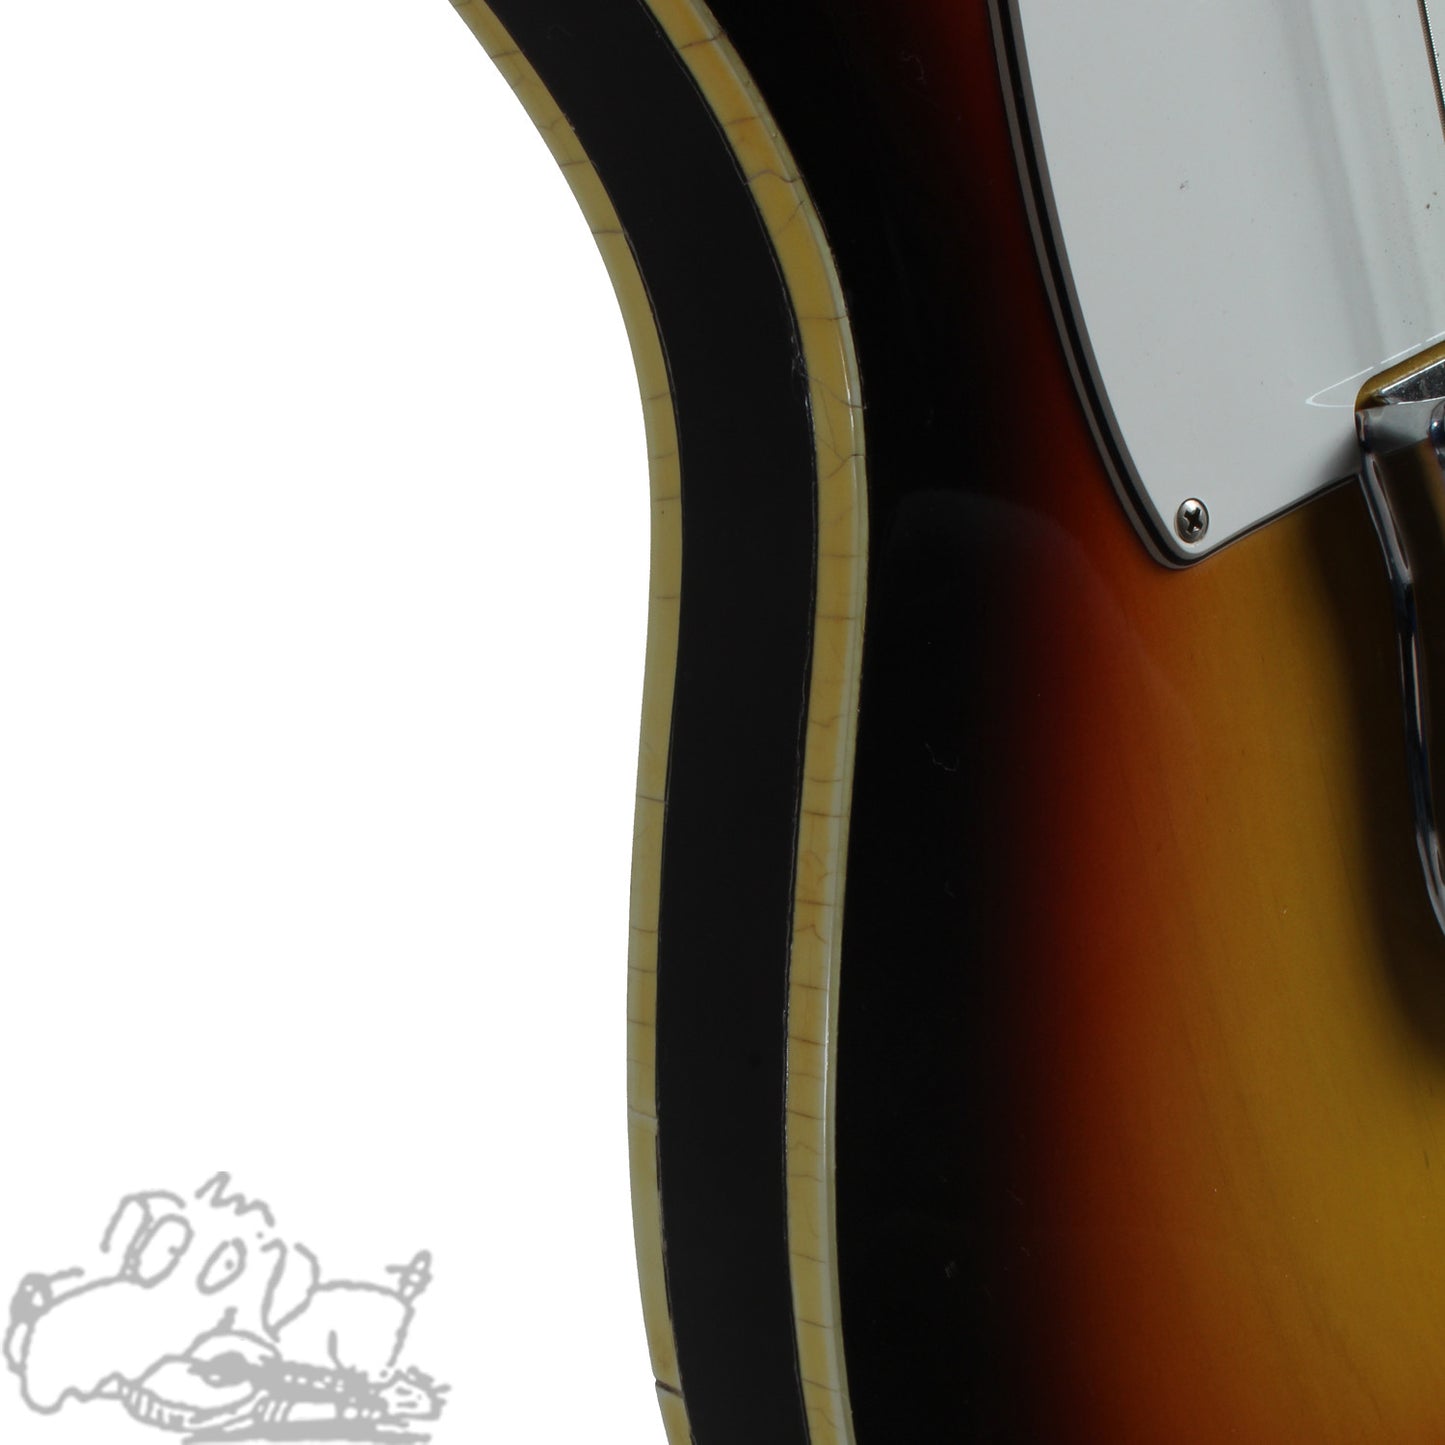 1966 Fender Telecaster Custom